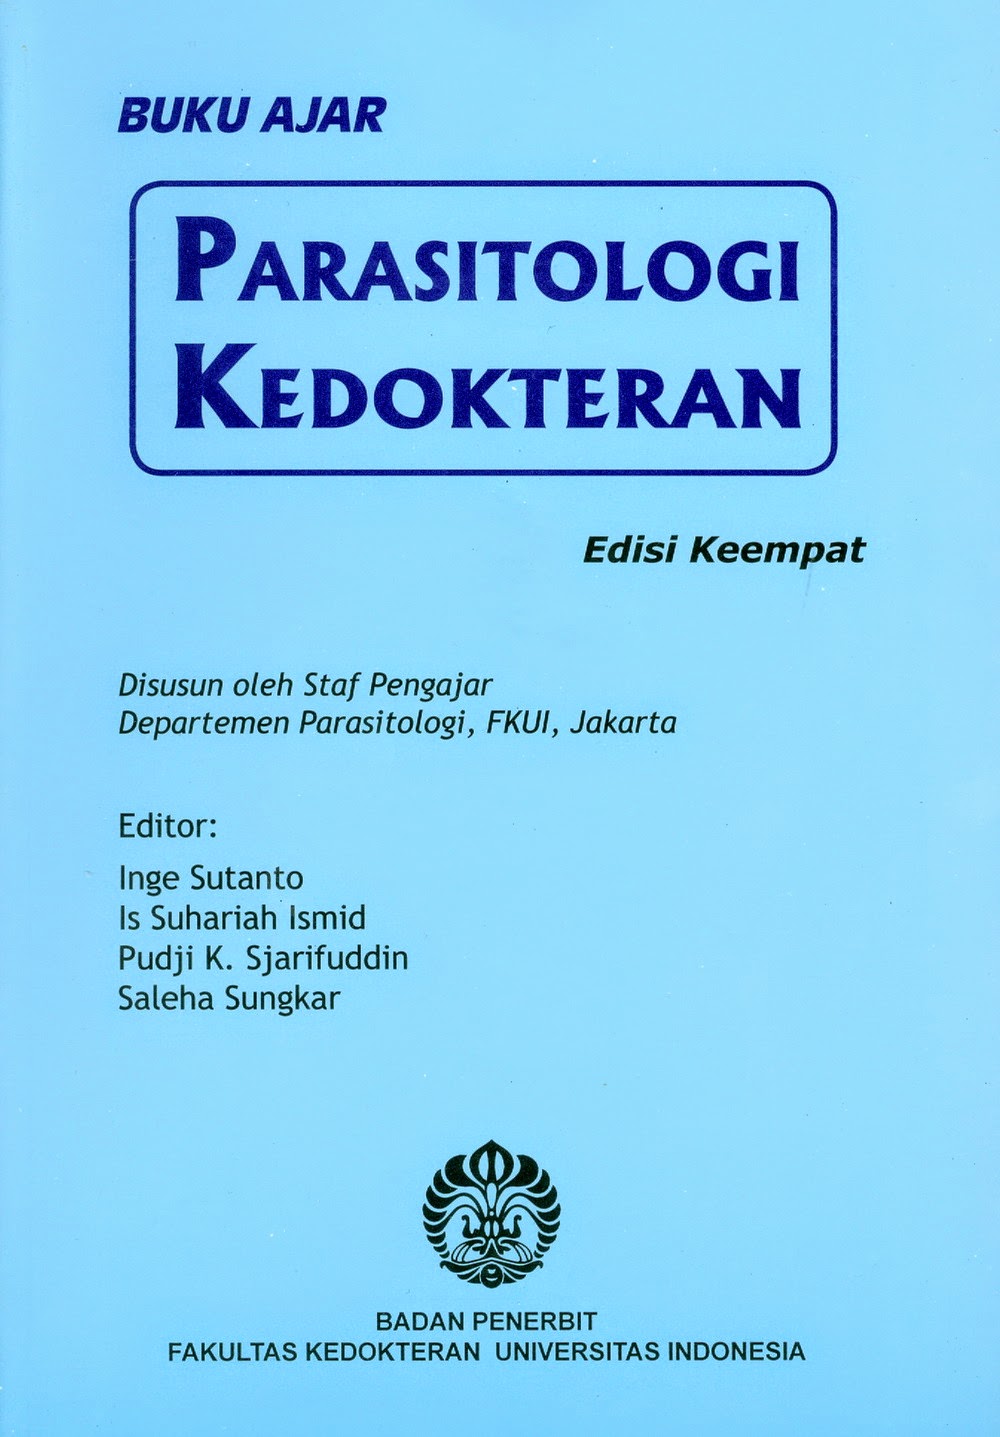 Buku Ajar Fisiologi Kedokteran Ganong Pdf Download